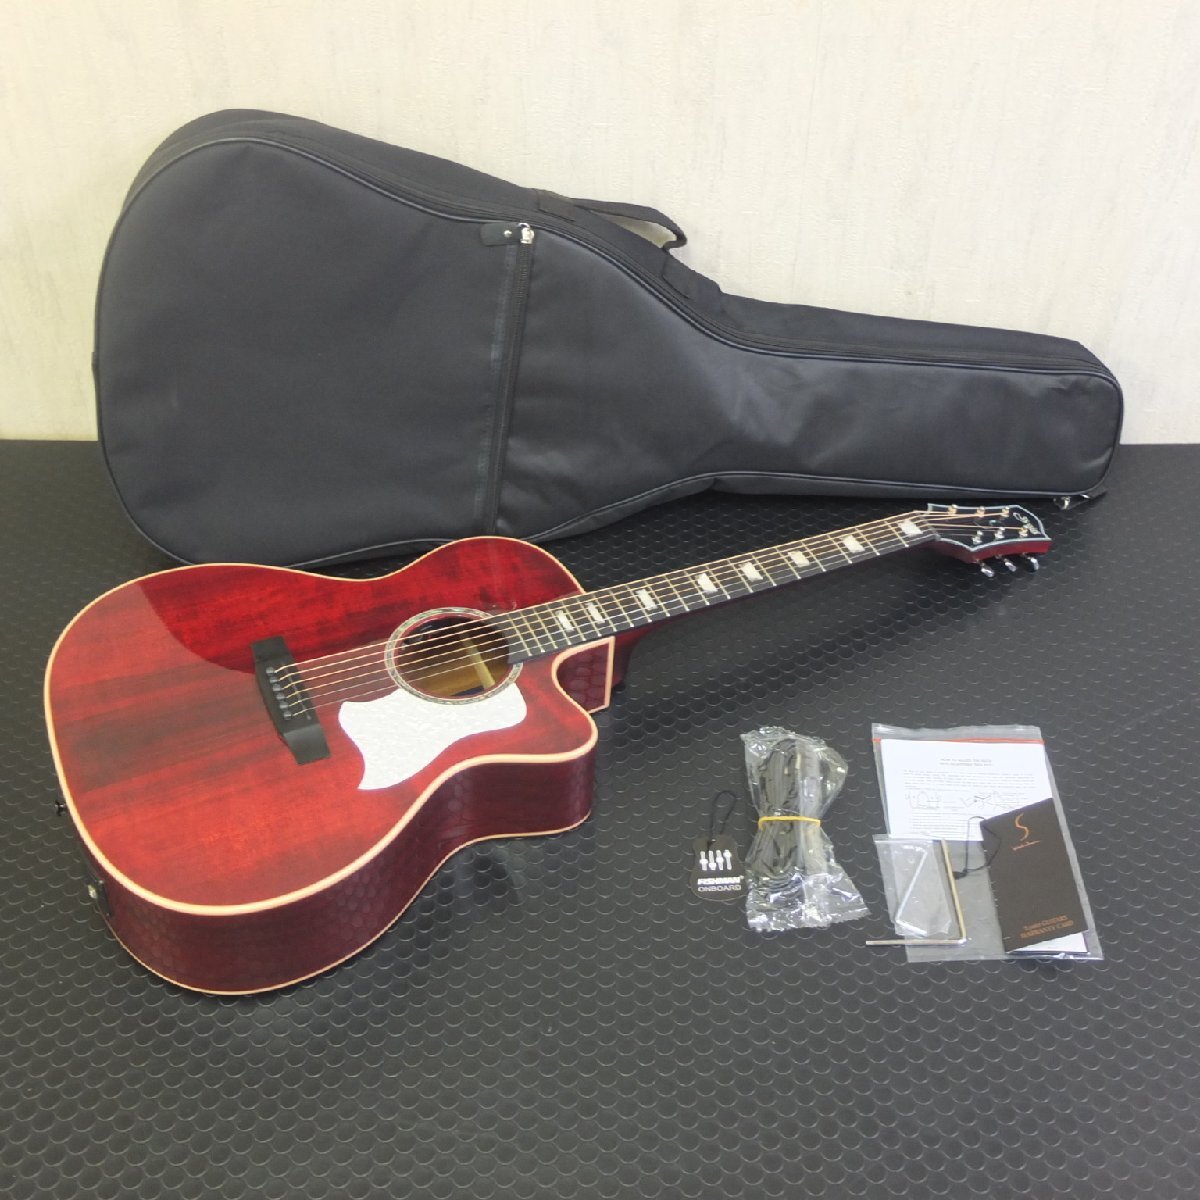 新品未使用品♪ S.Yairi YATK-1400EC/WR ワインレッド Advanced Series アコースティックギター エレアコ ソフトケース付の画像1